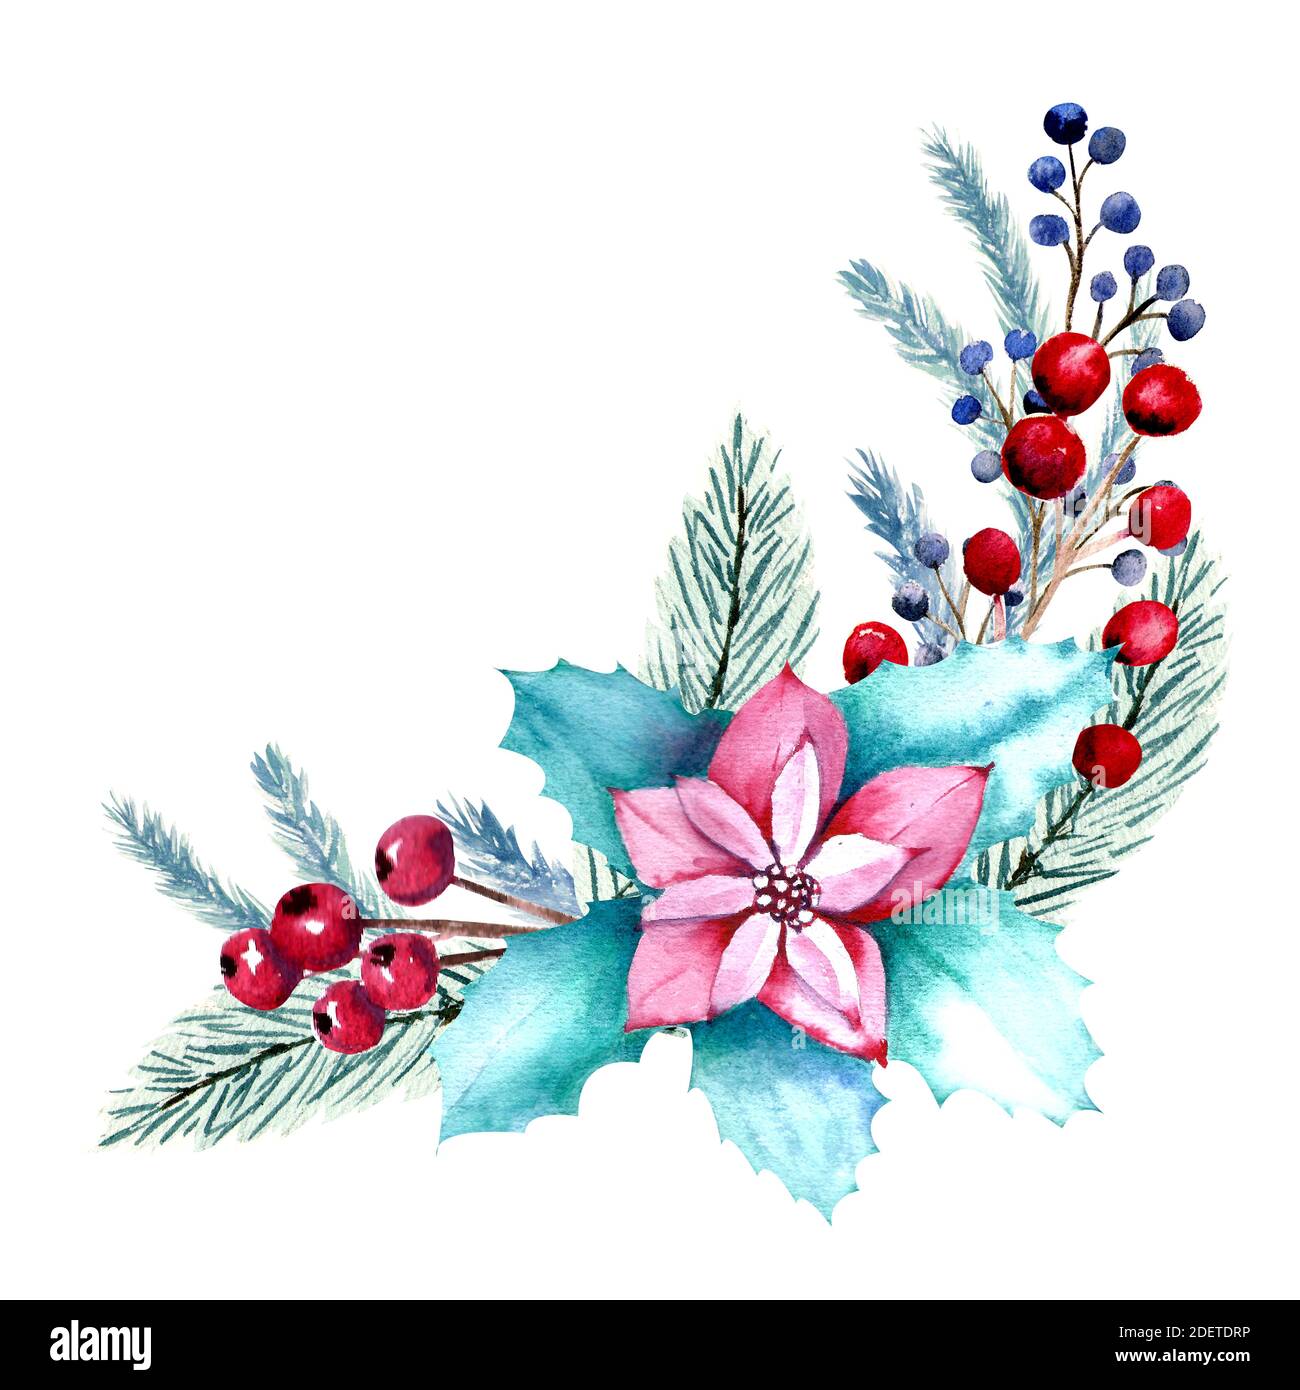 Composition d'aquarelle d'hiver avec fleurs de poinsettia, baies, branches de sapin. Illustration de Noël dessinée à la main. Pour les invitations, les cartes de vœux Banque D'Images